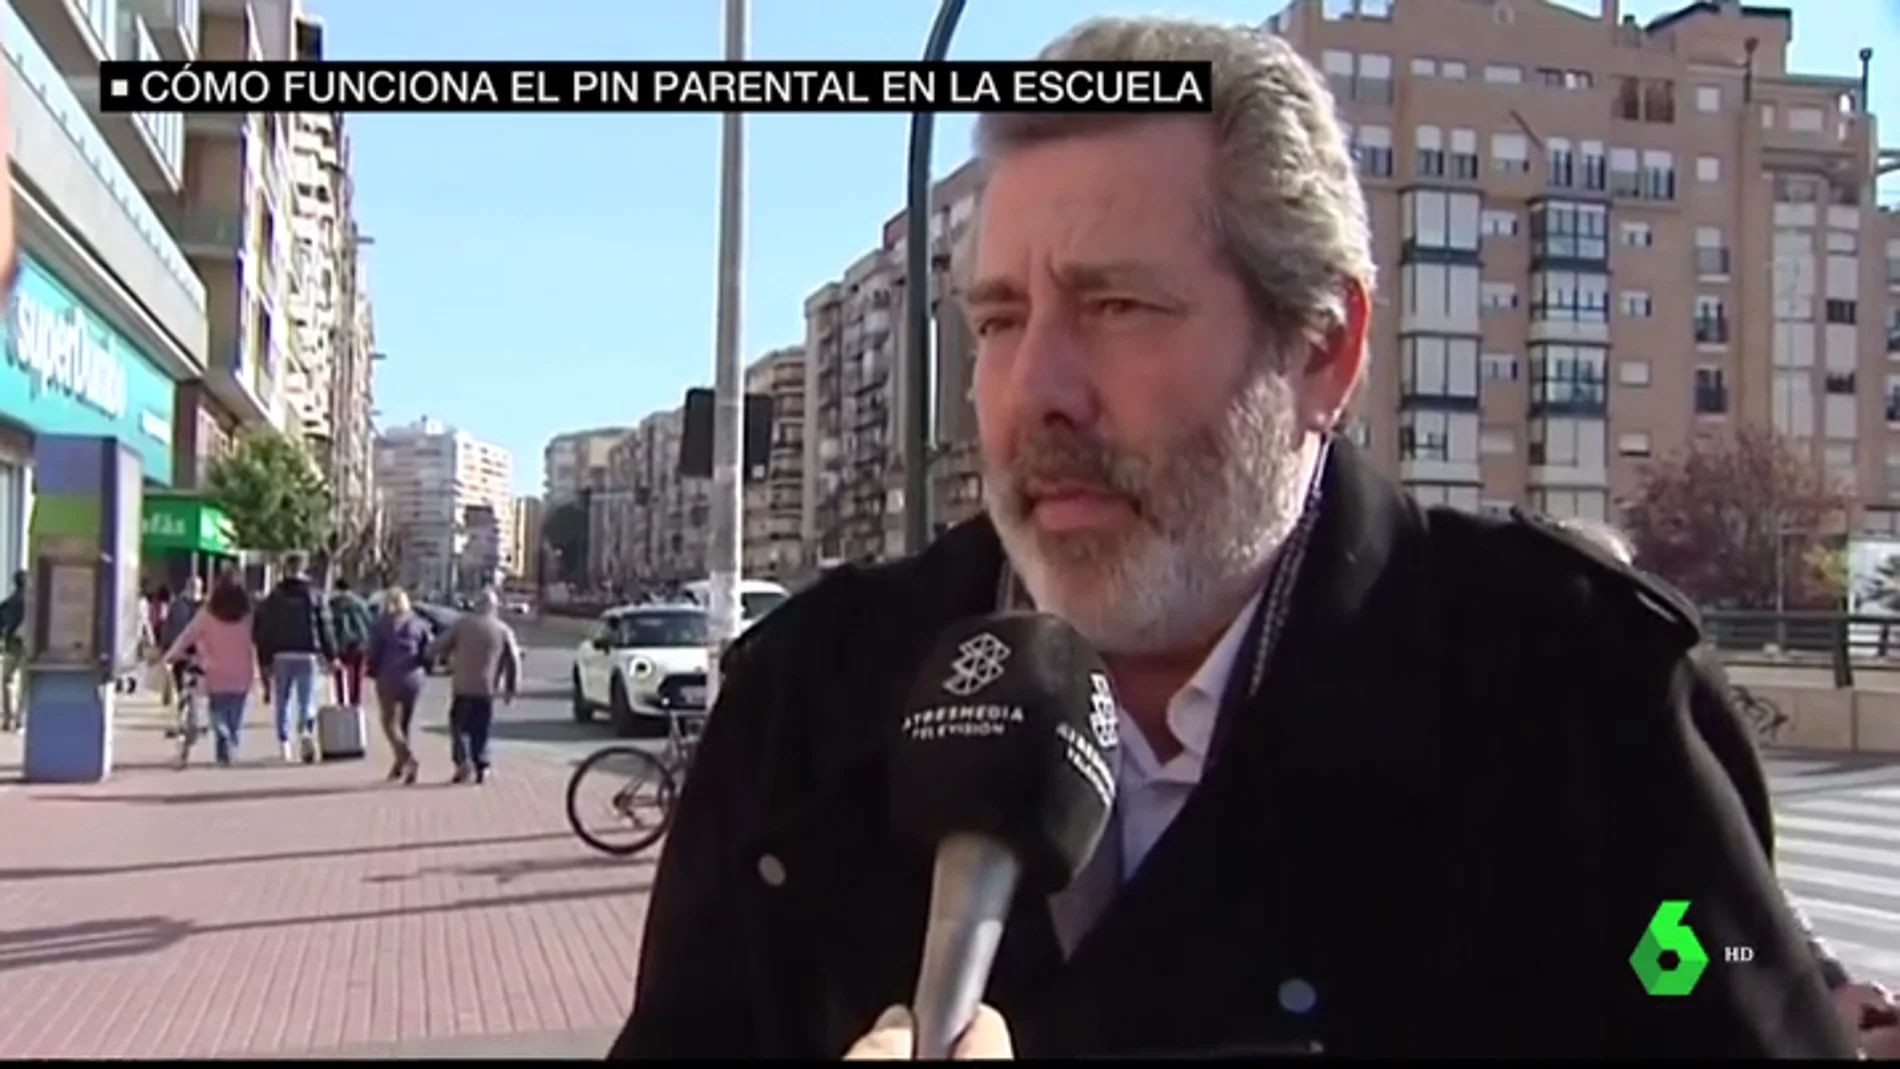 Profesores y padres de Murcia denuncia la implantación del 'pin parental': "Todo lo que sea quitar libertades es un disparate"